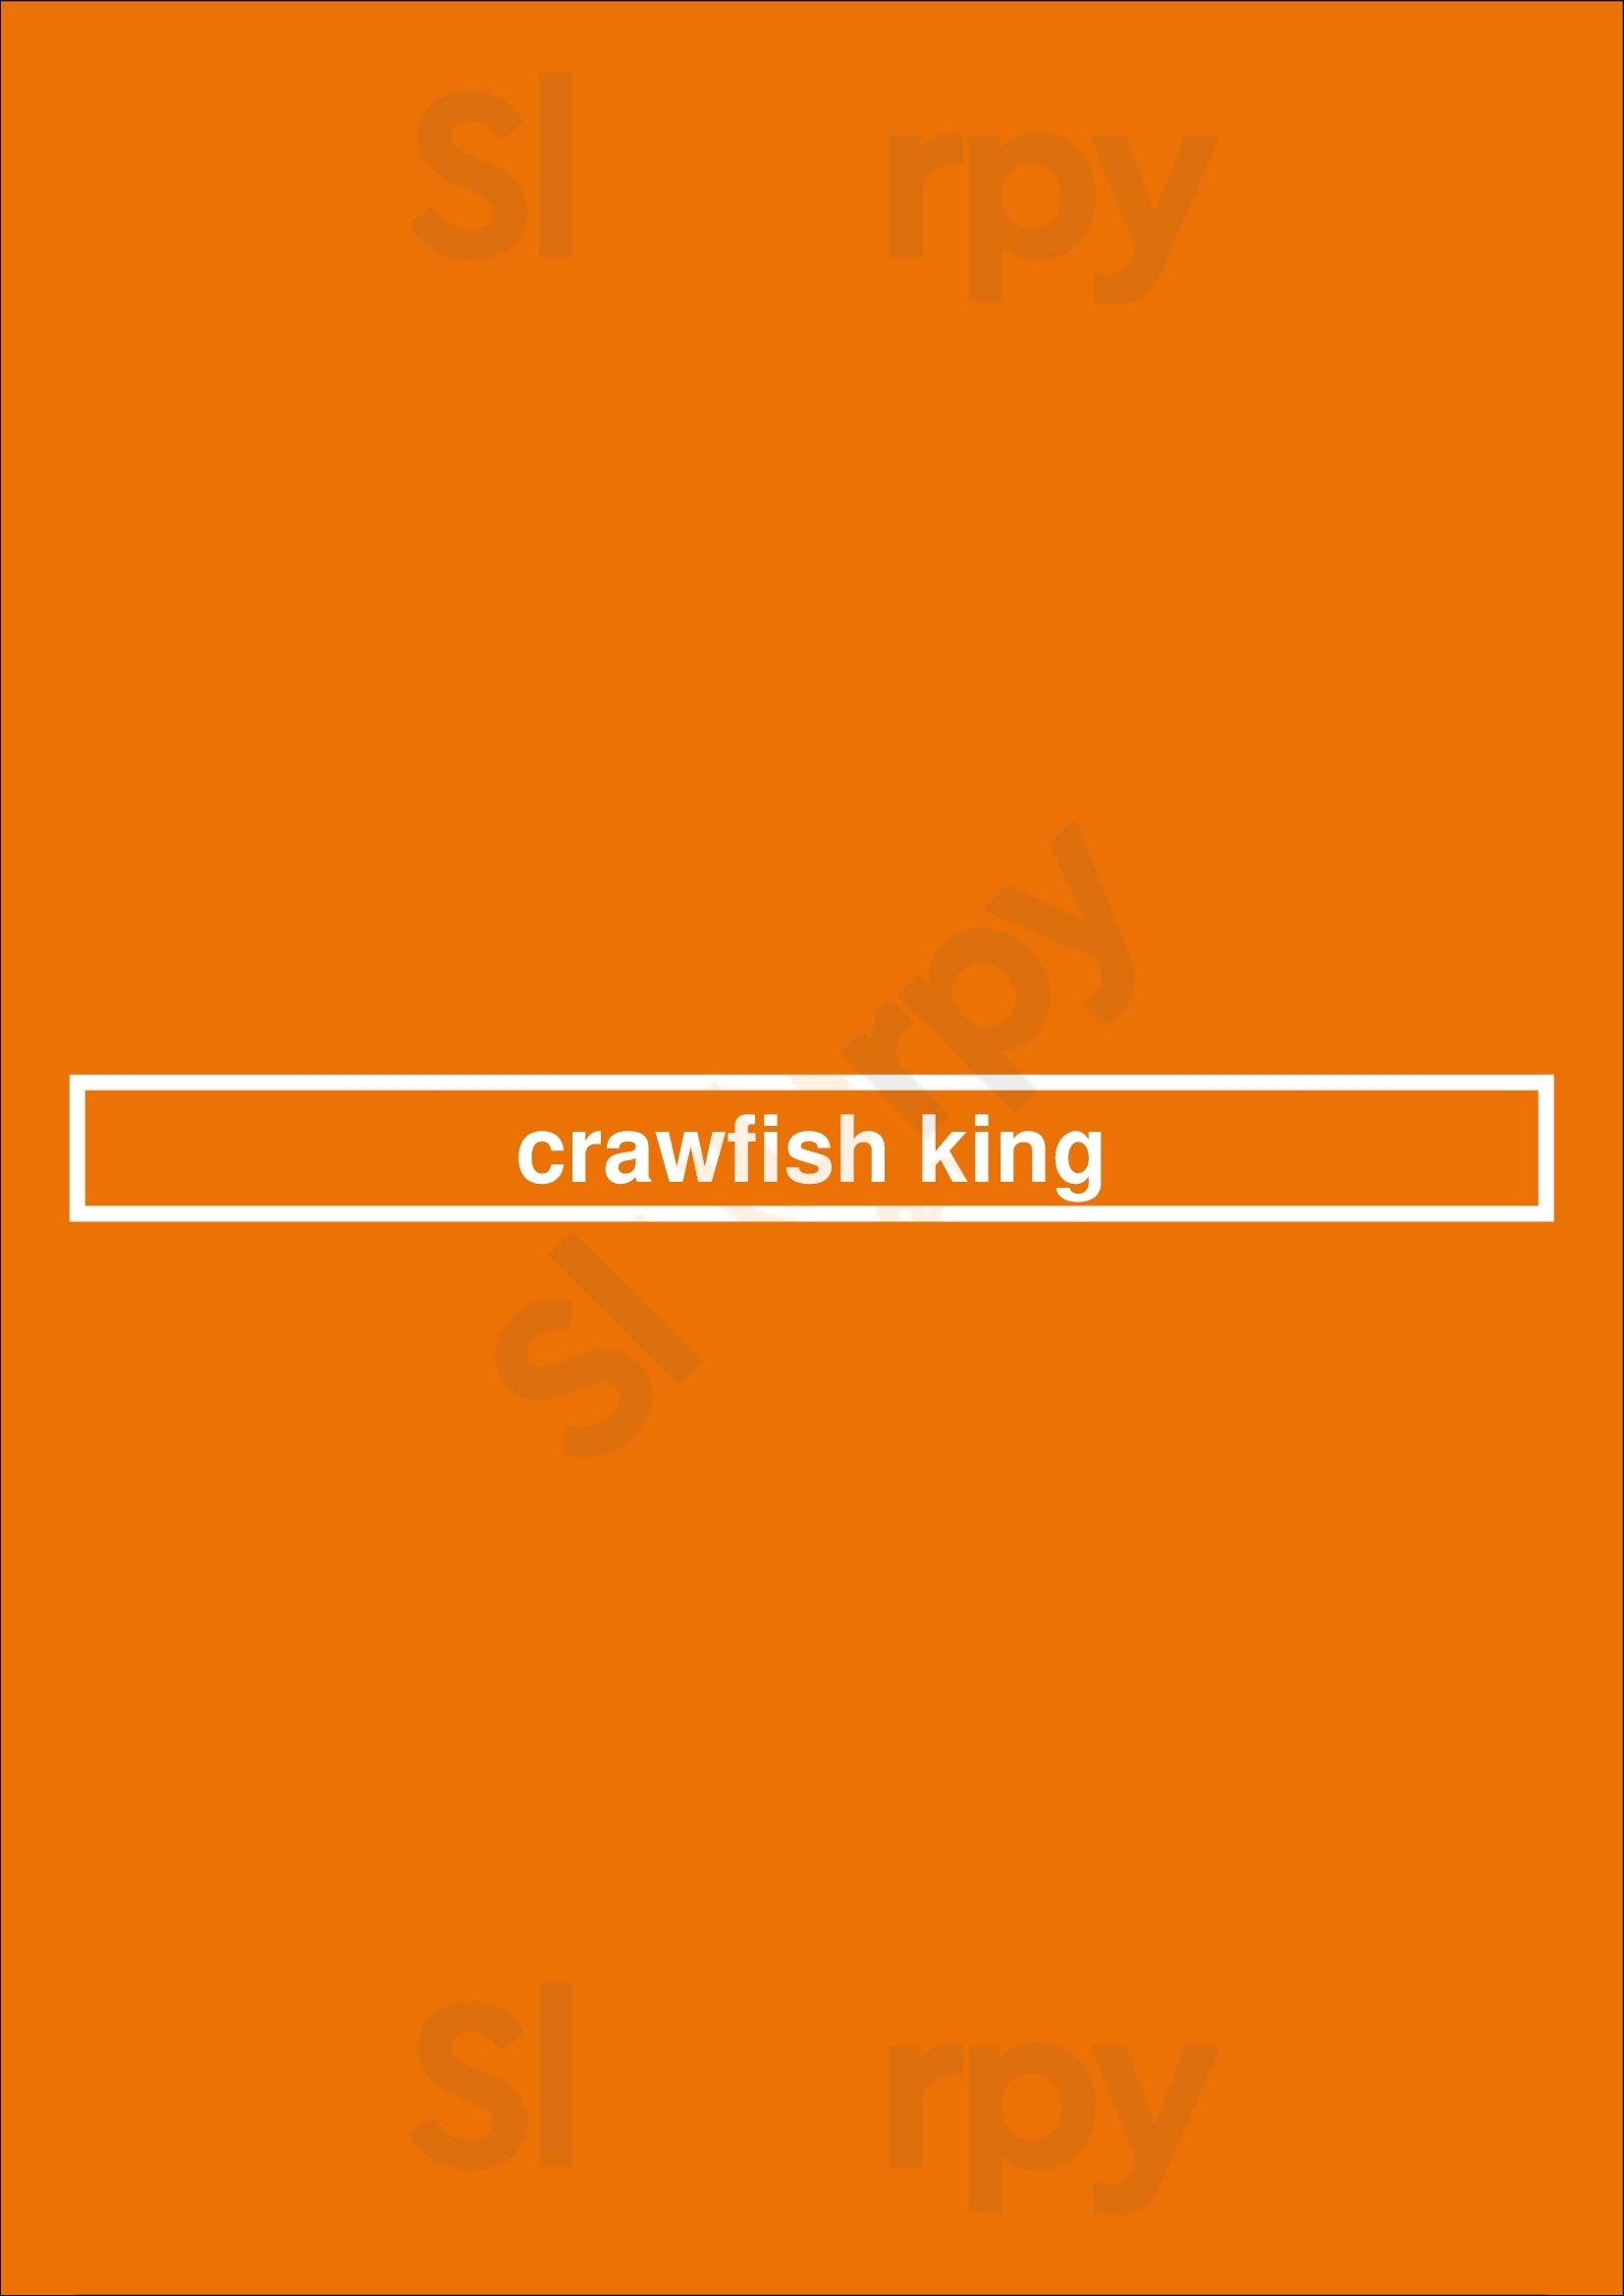 Crawfish King Seattle Menu - 1